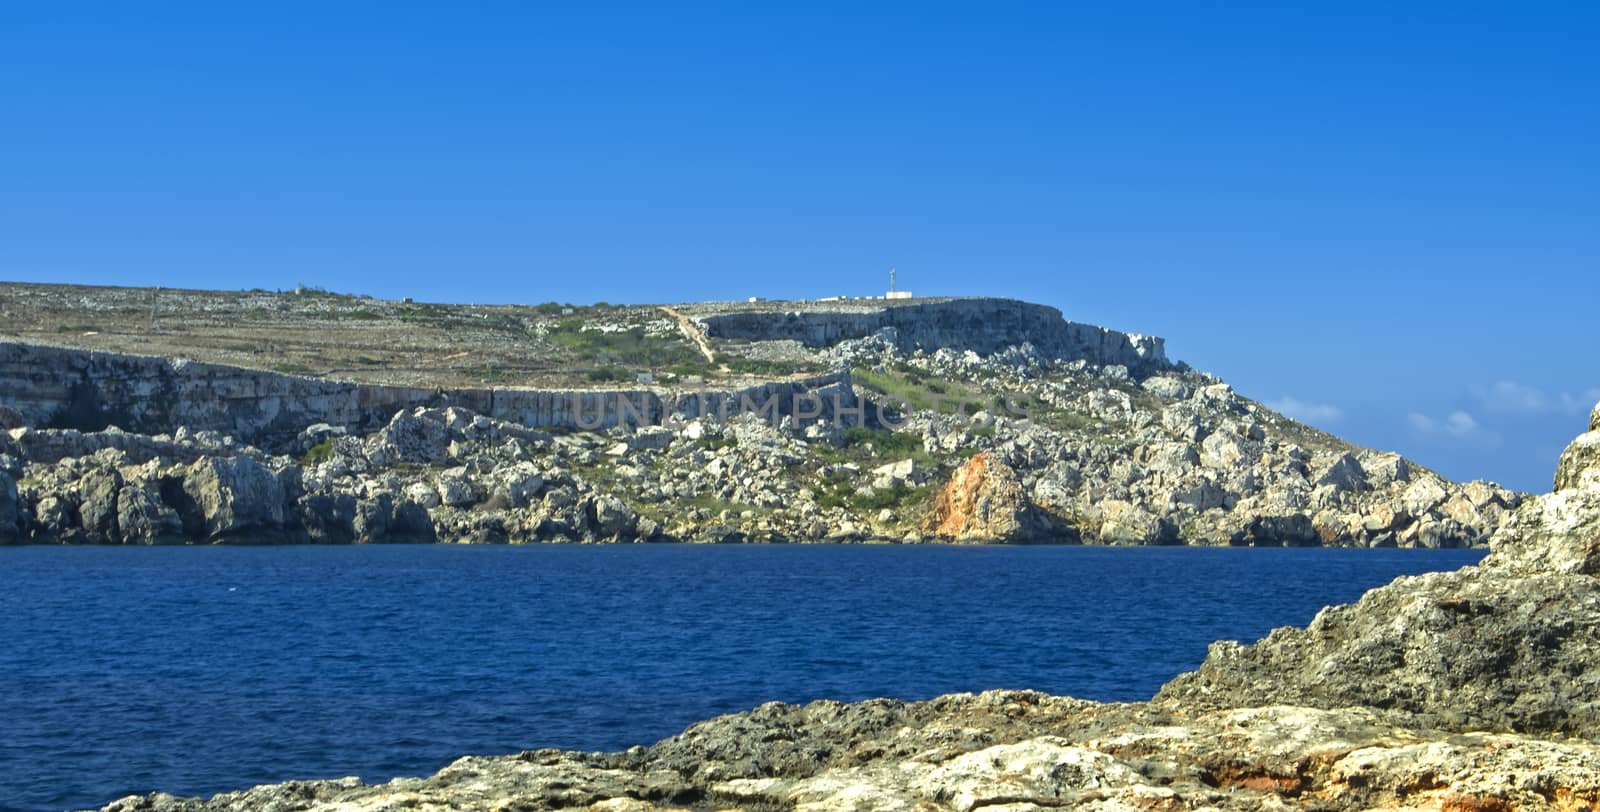 Rocky coastline in the vicinity of Cirkewwa - north-western Malta